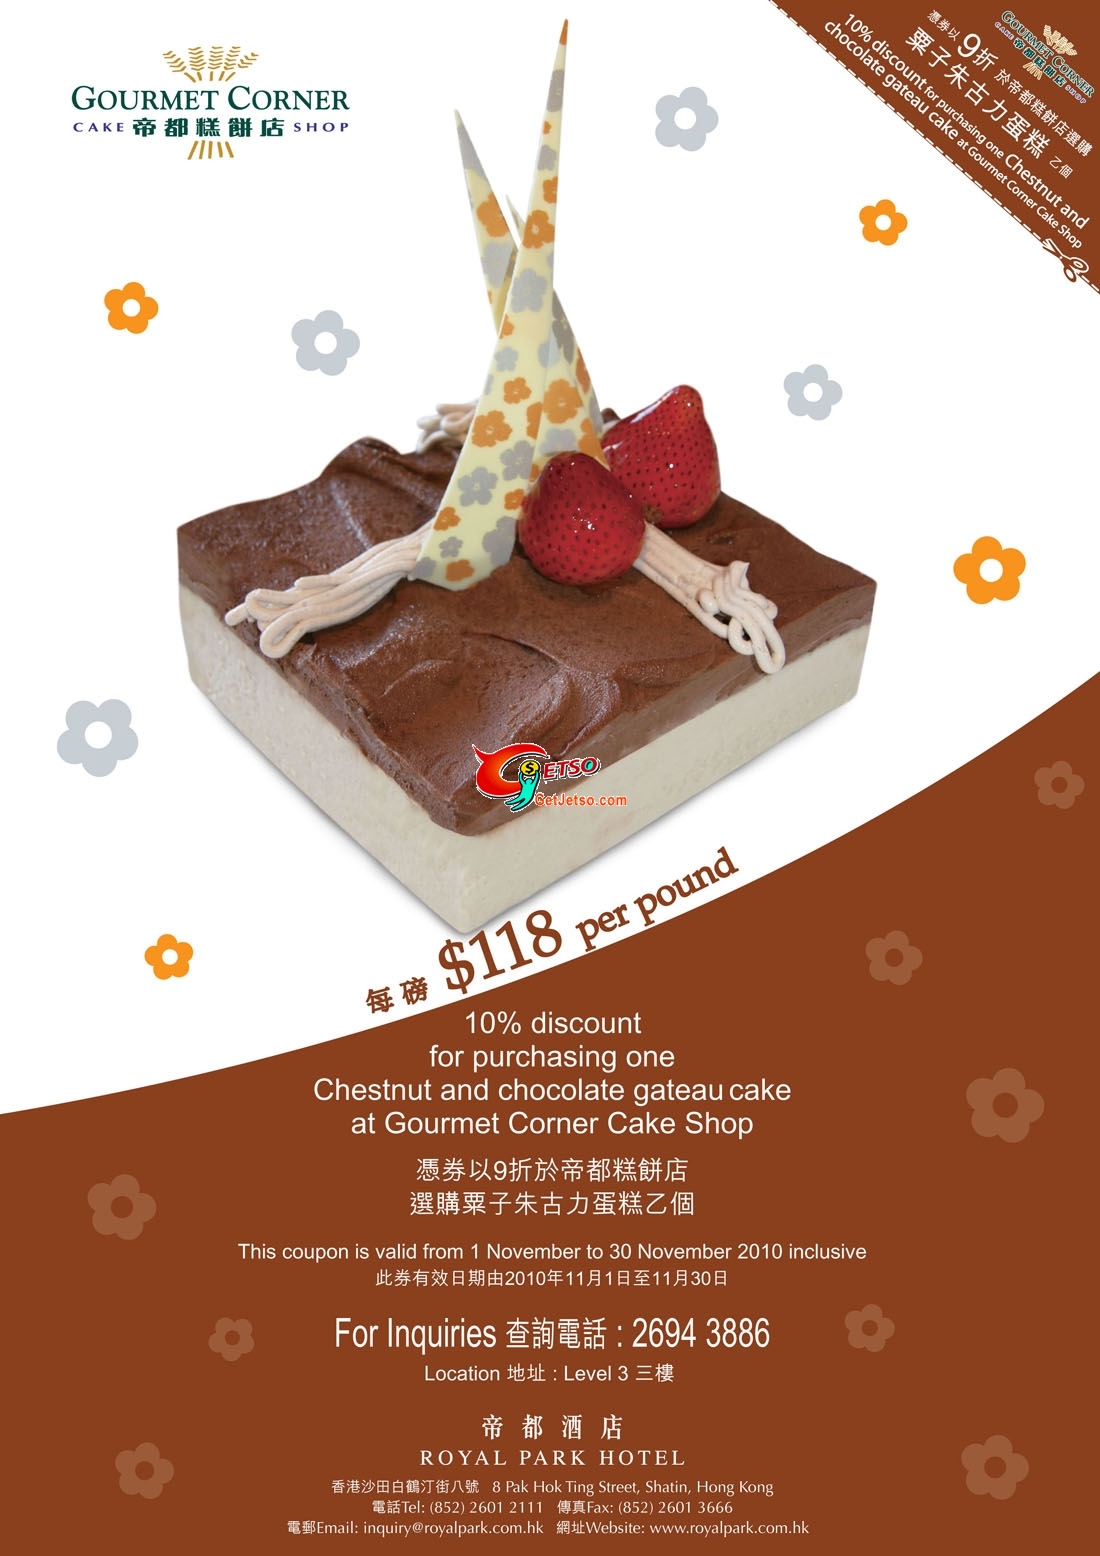 帝都糕餅店「粟子朱古力蛋糕」9折優惠券(至10年11月30日)圖片1